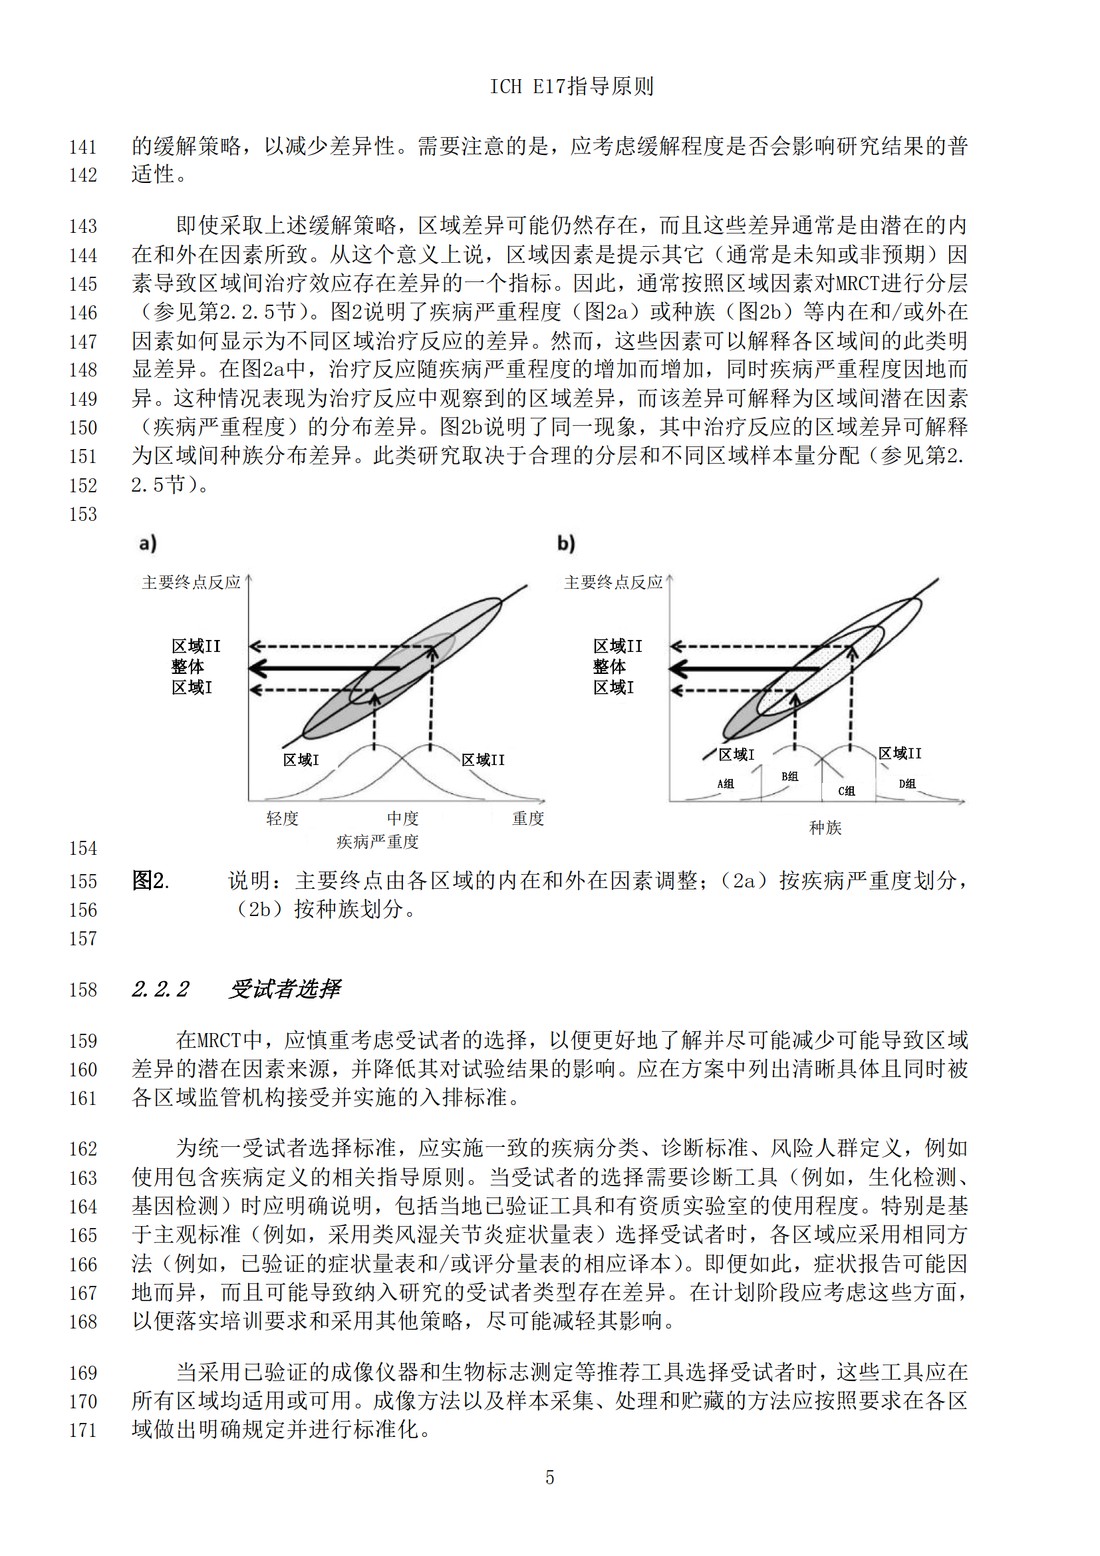 E17多区域临床试验计划与设计的一般原则（中文翻译公开征求意见稿）_08.jpg